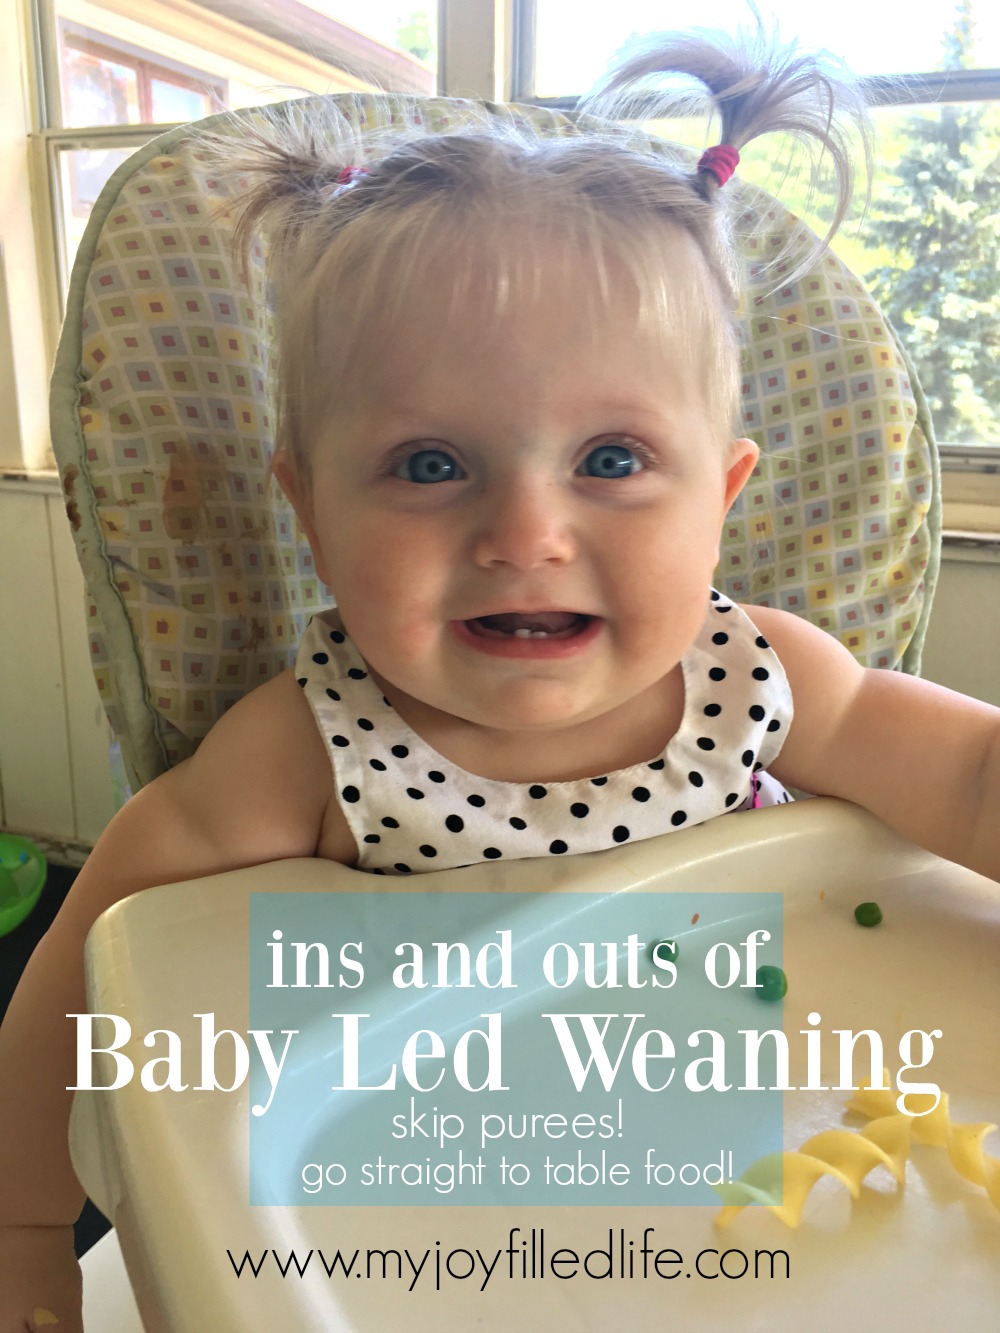 babyledweaning - My Joy-Filled Life